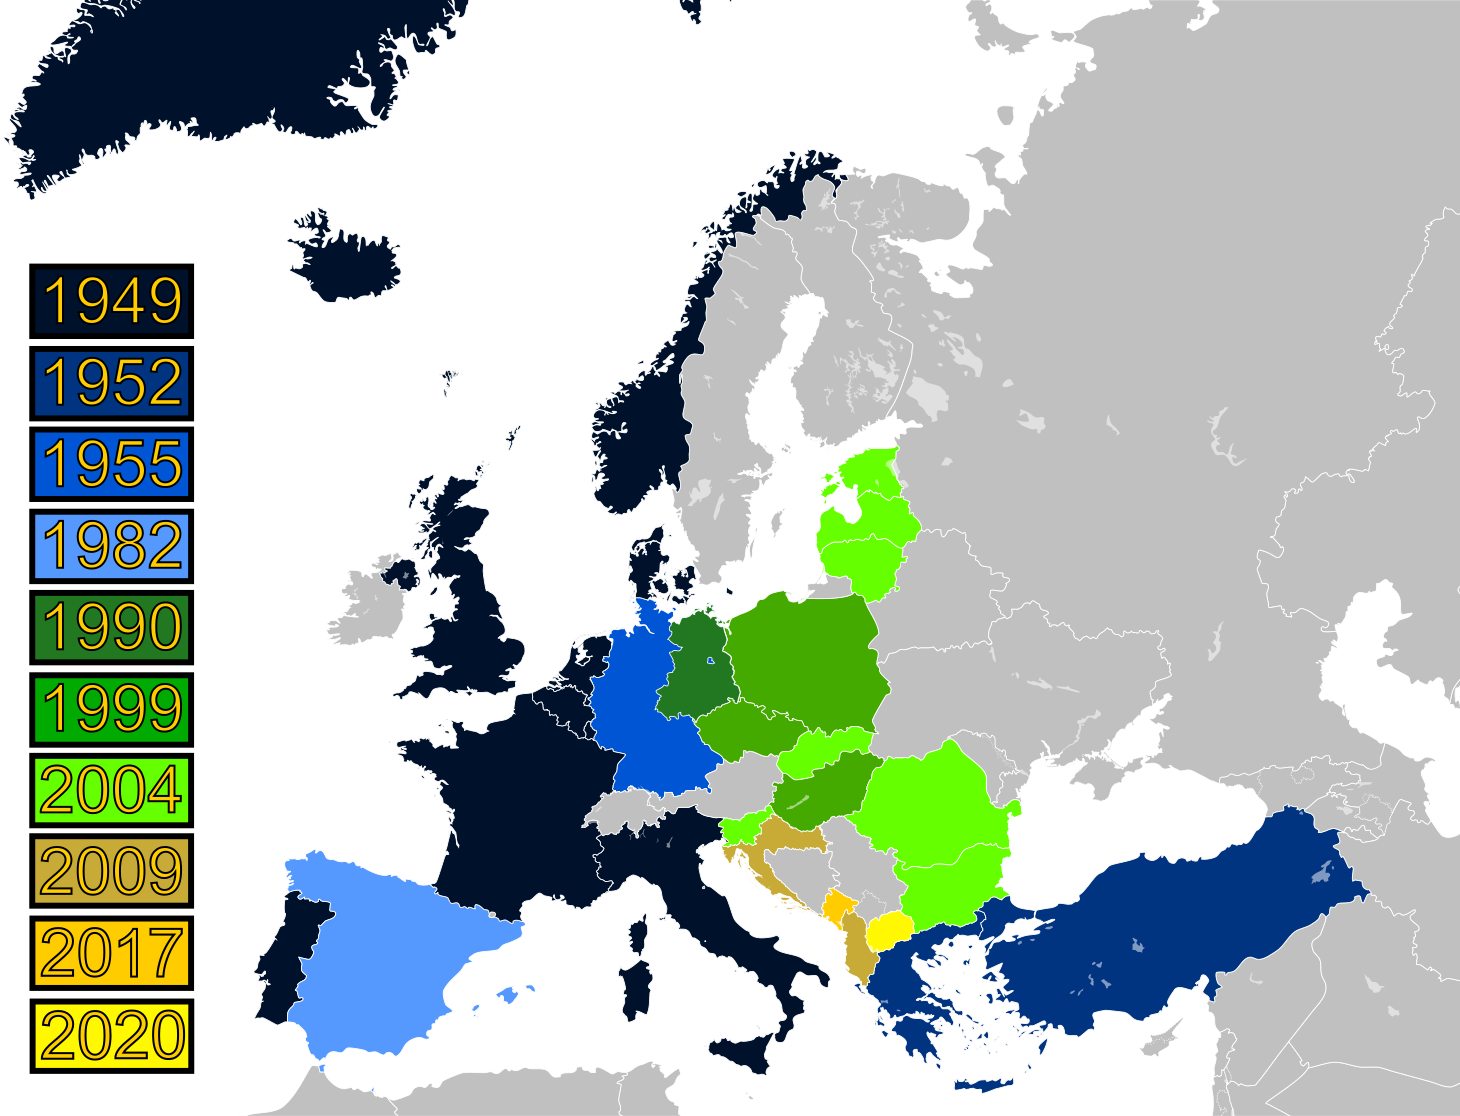 NATO enlargement